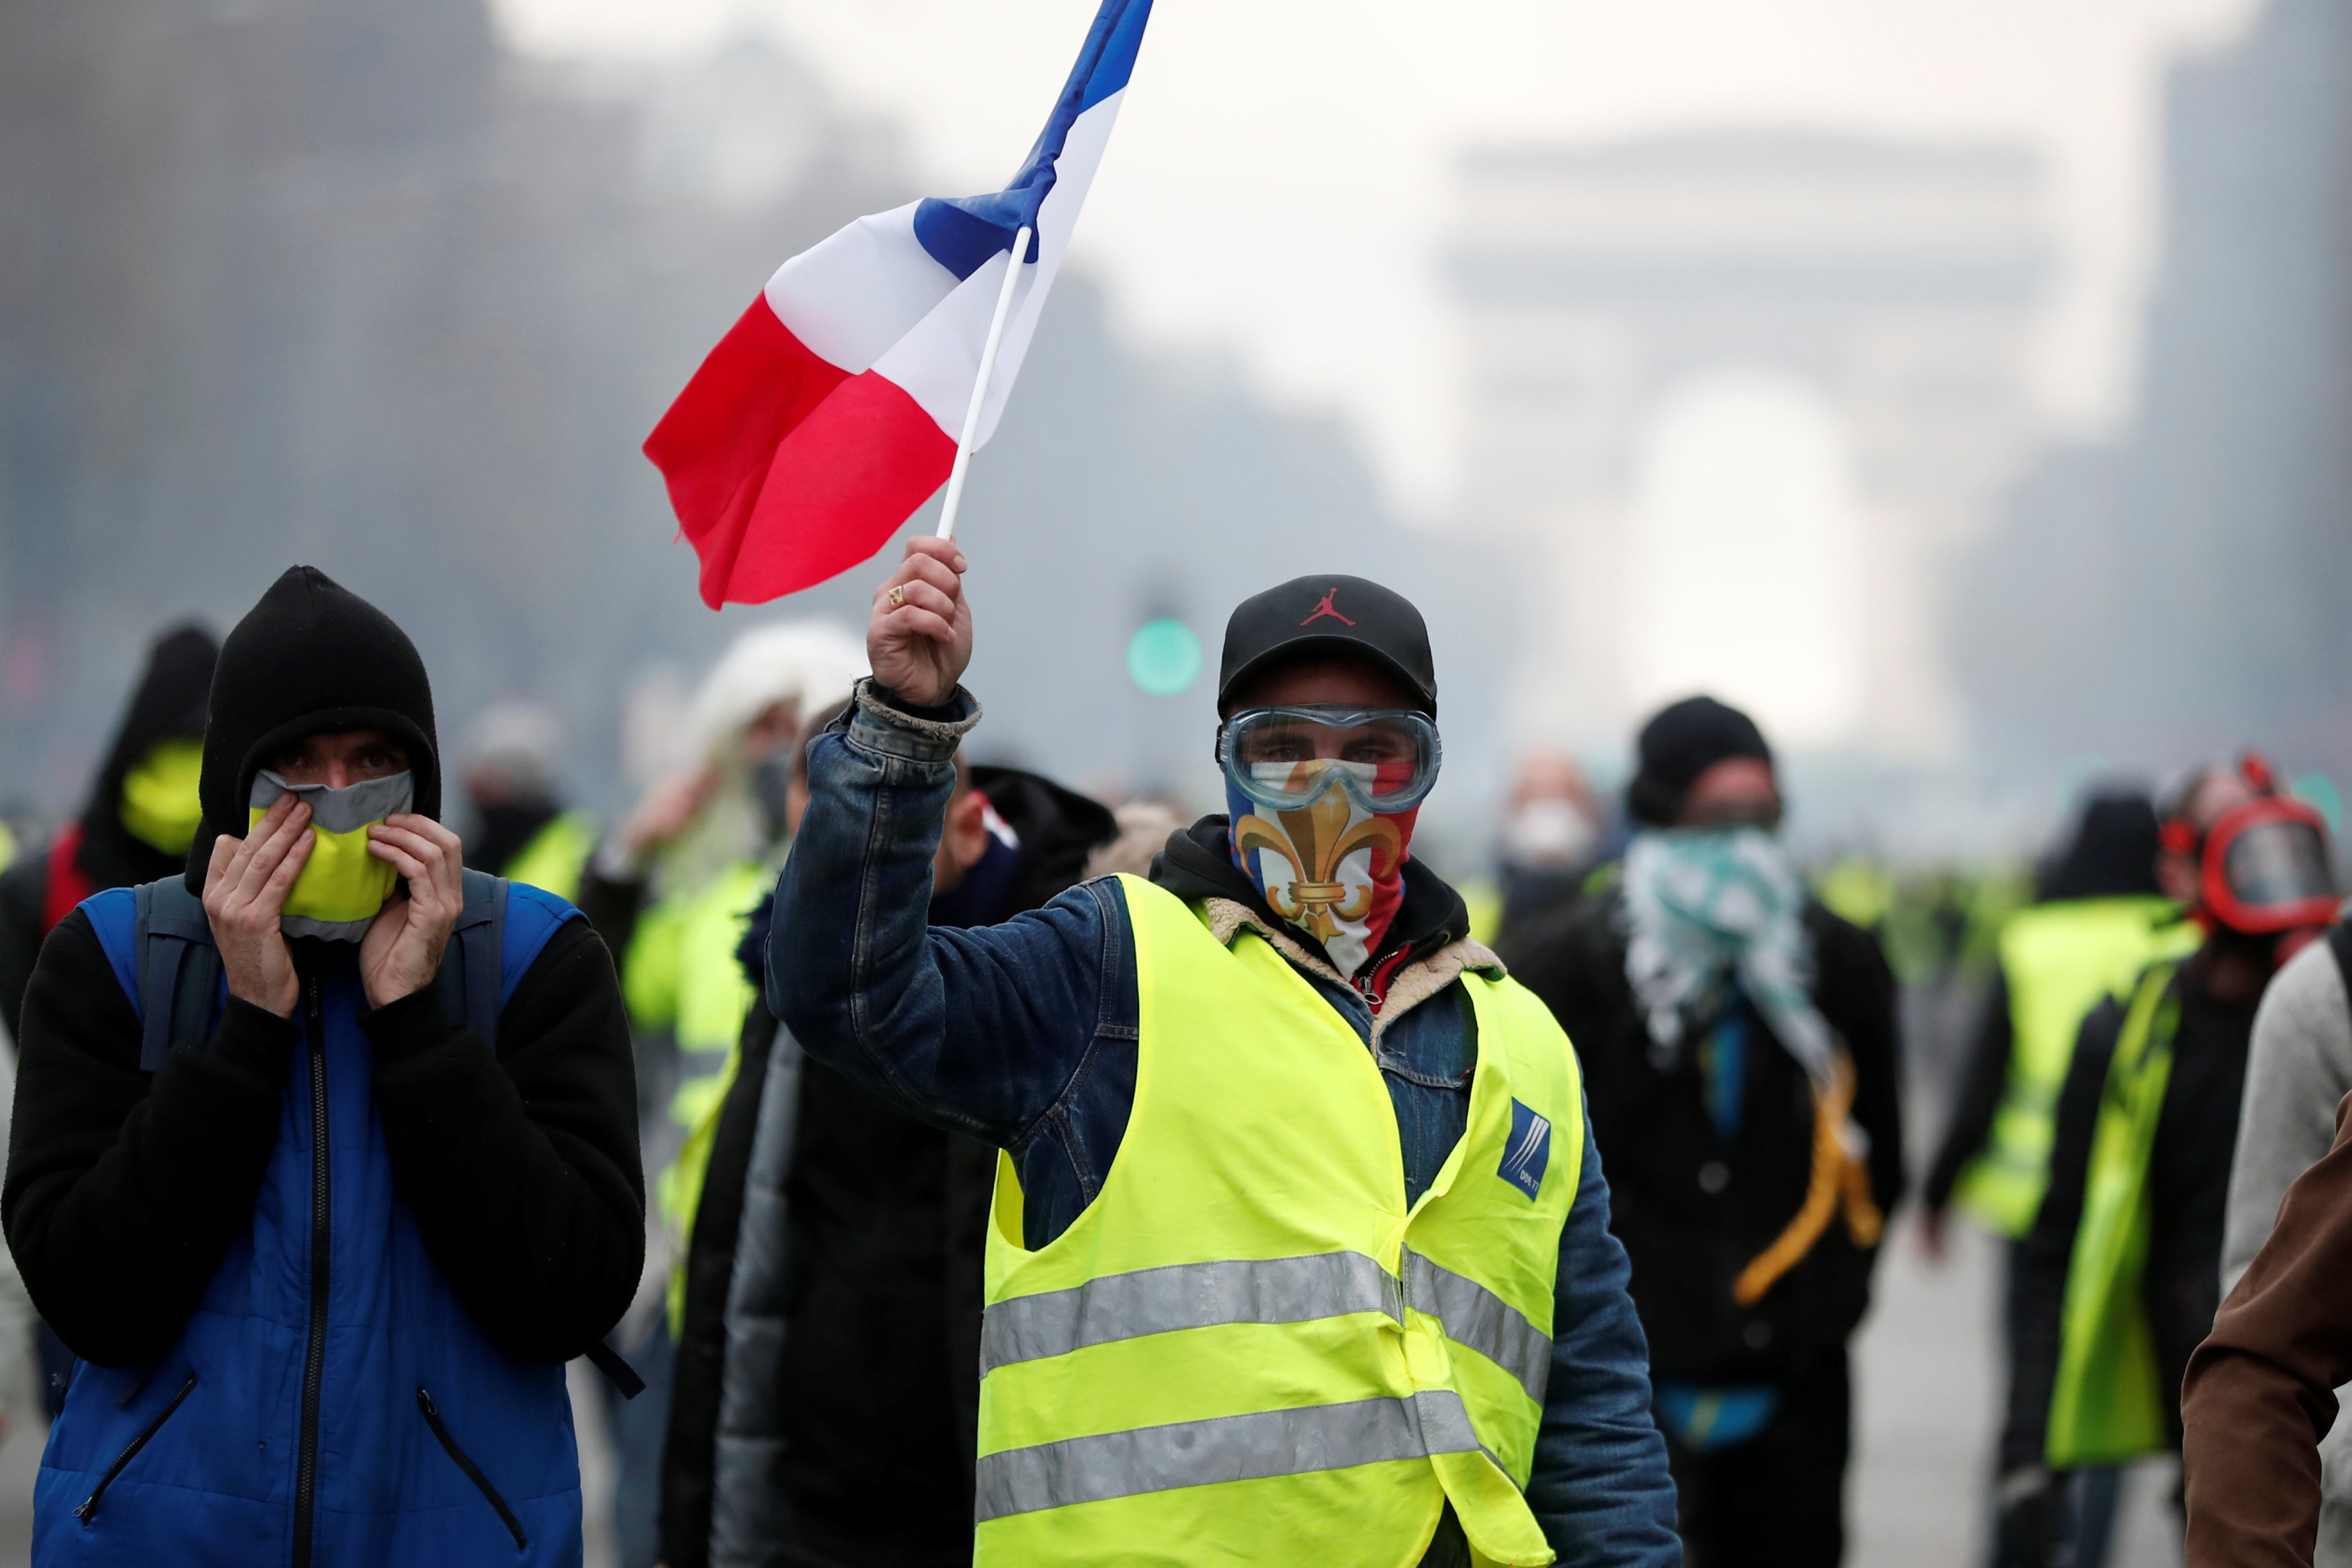 le pen reitera su apoyo chalecos amarillos disturbios en paris